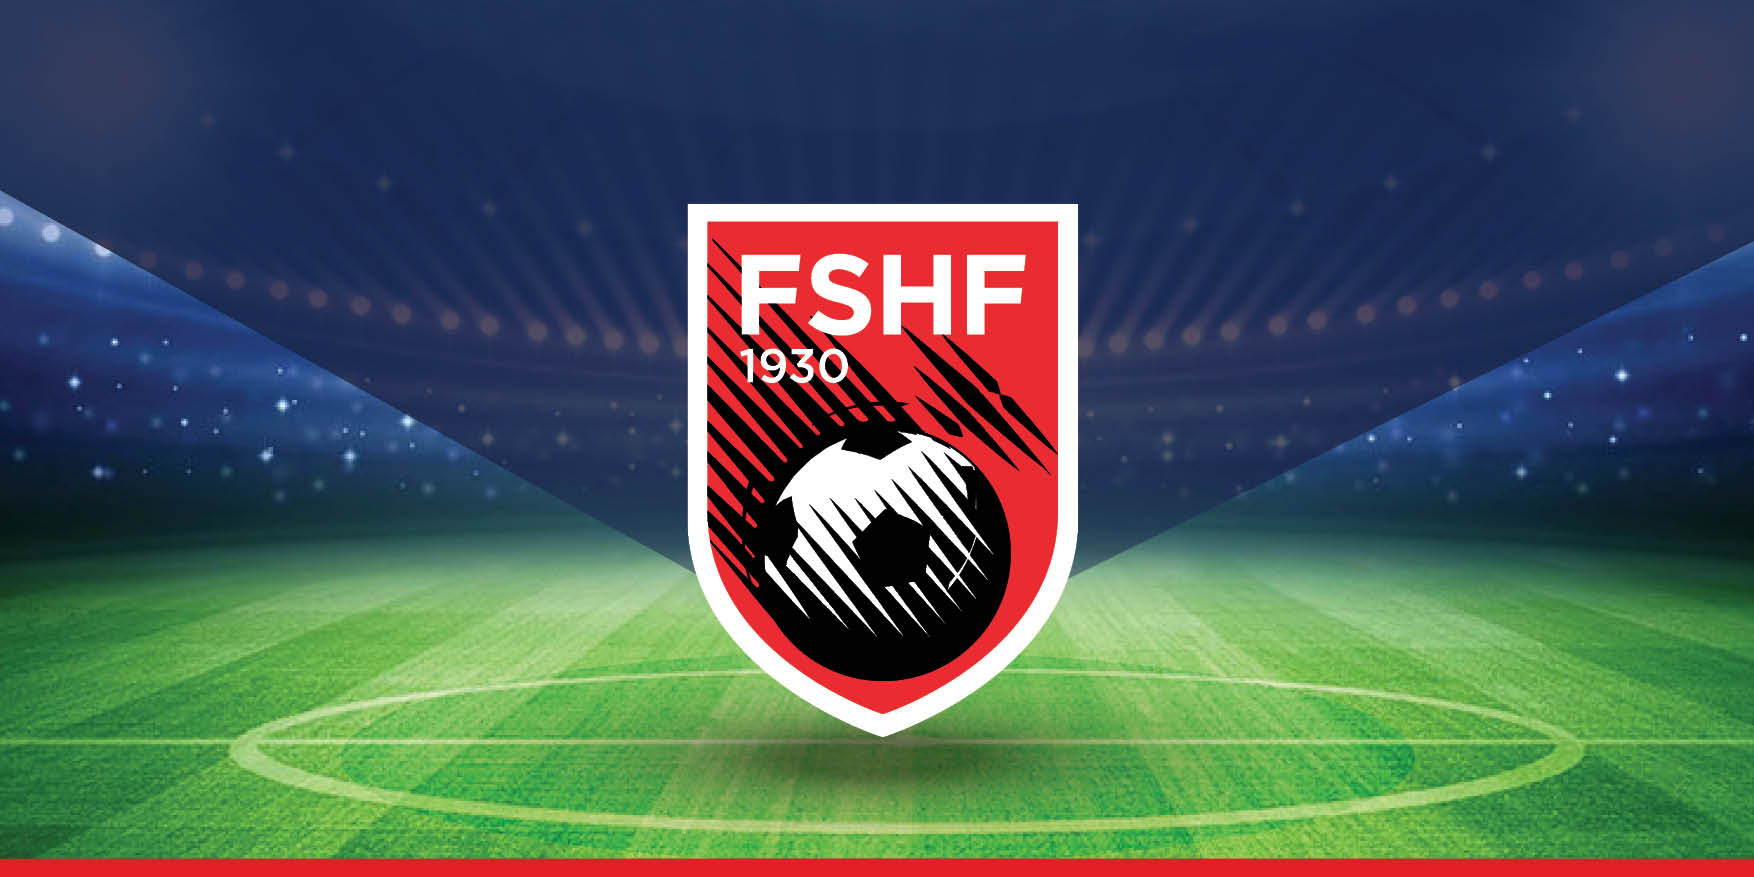 FSHF: Rrezikon të anullohet ndeshja Shqipëri-Angli